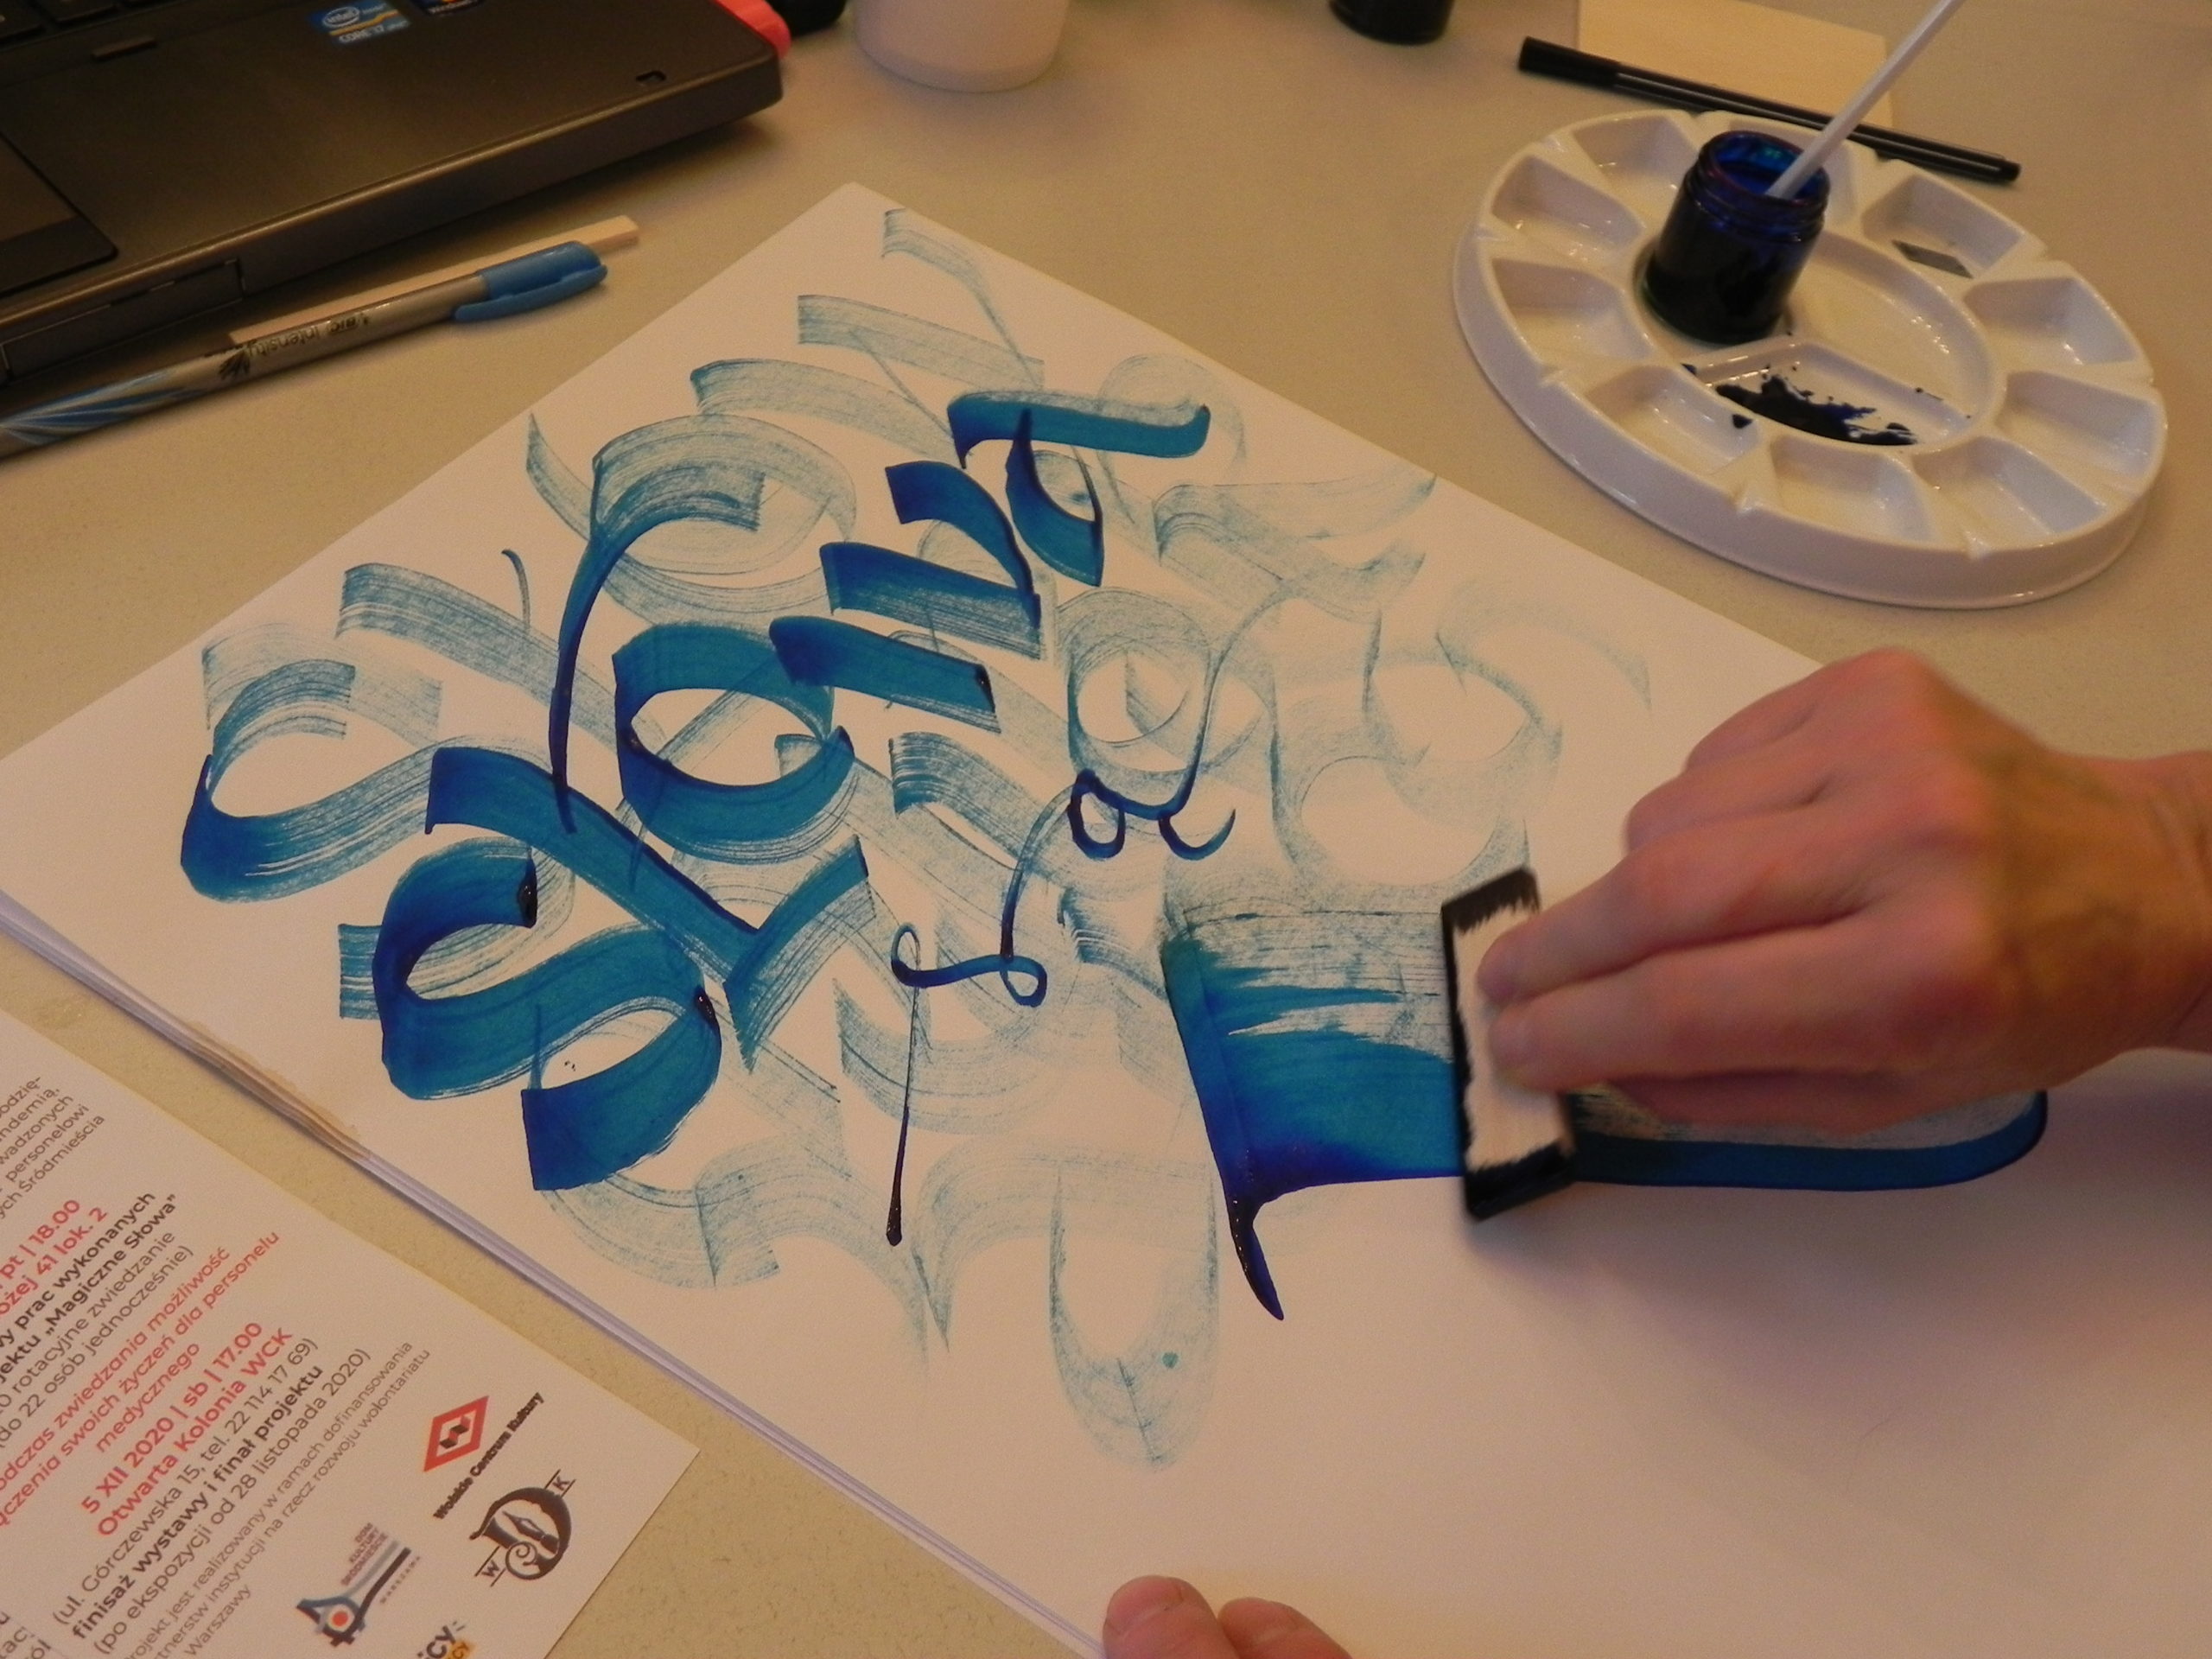 Zdjęcie z warsztatów kaligrafii przedstawiające w przybliżeniu proces tworzenia kaligrafii - zbliżenie na kartkę papieru niebieskim napisem "słowa", tworzonym krawędzią sześciennego przedmiotu zanurzonego w farbie